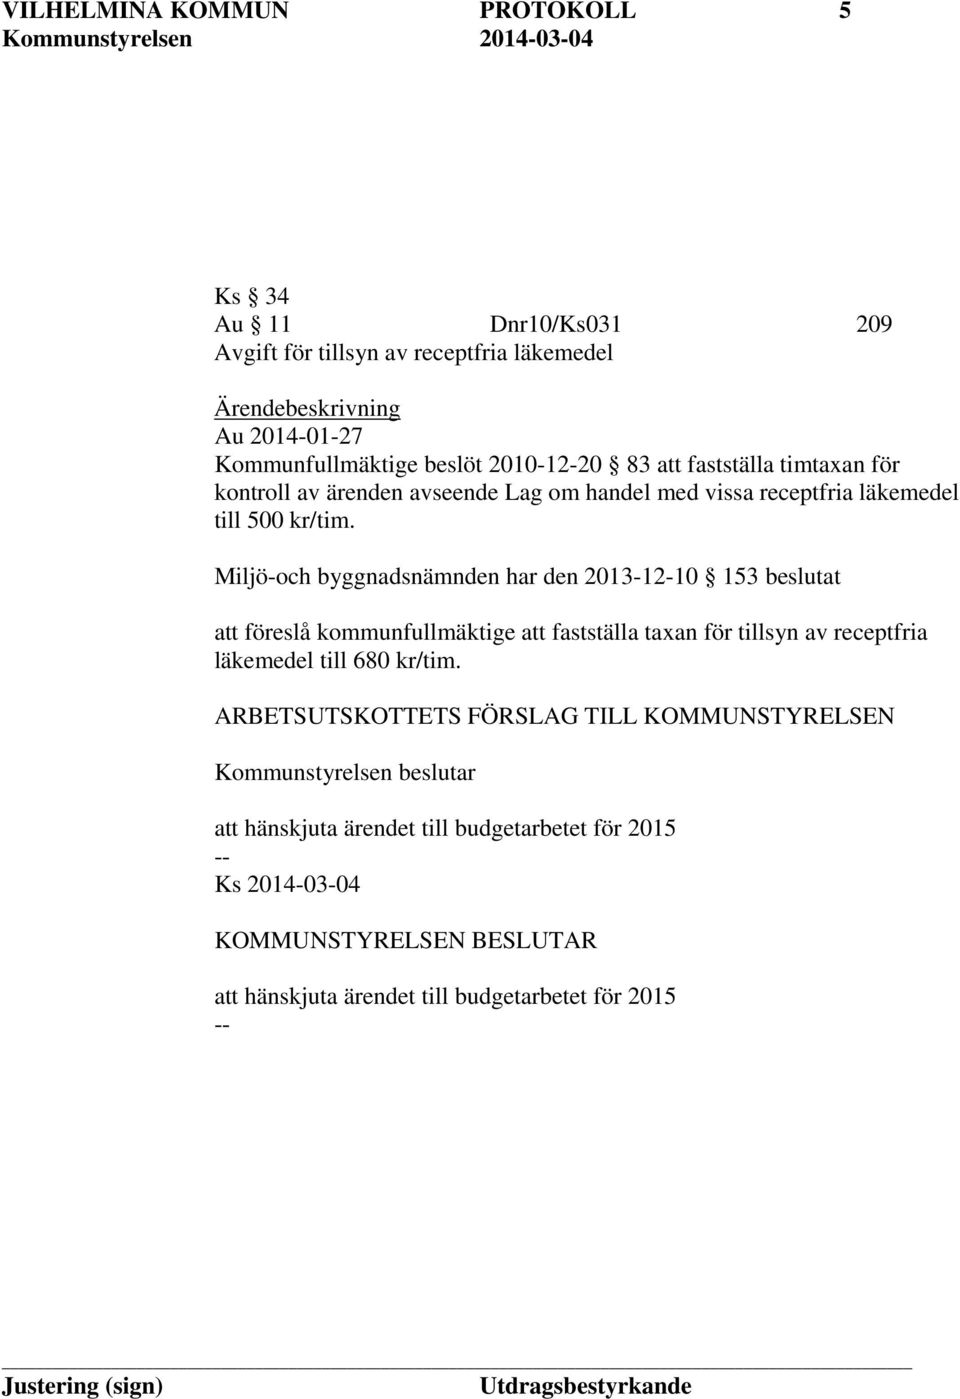 Miljö-och byggnadsnämnden har den 2013-12-10 153 beslutat att föreslå kommunfullmäktige att fastställa taxan för tillsyn av receptfria läkemedel till 680